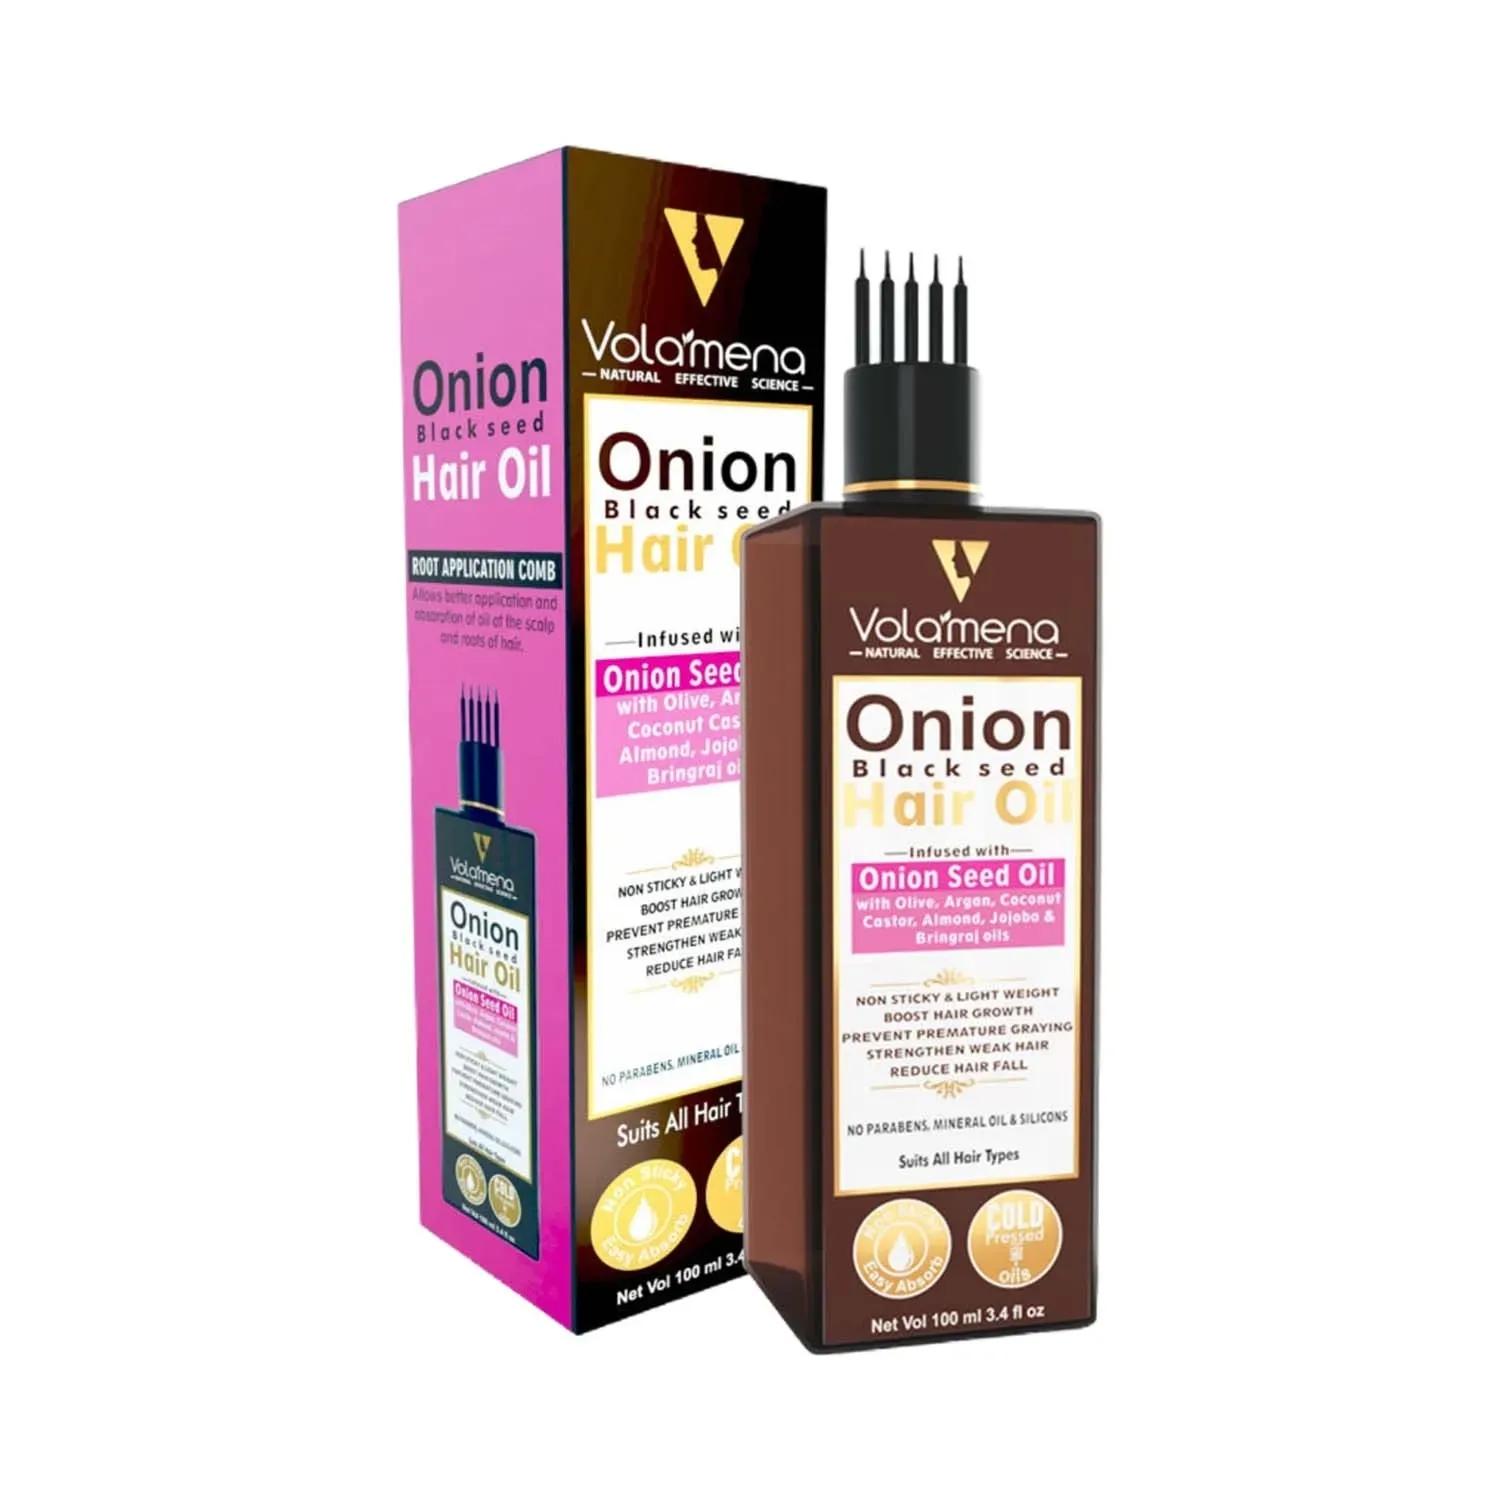 Volamena Onion Black Seed Hair Oil (100ml)